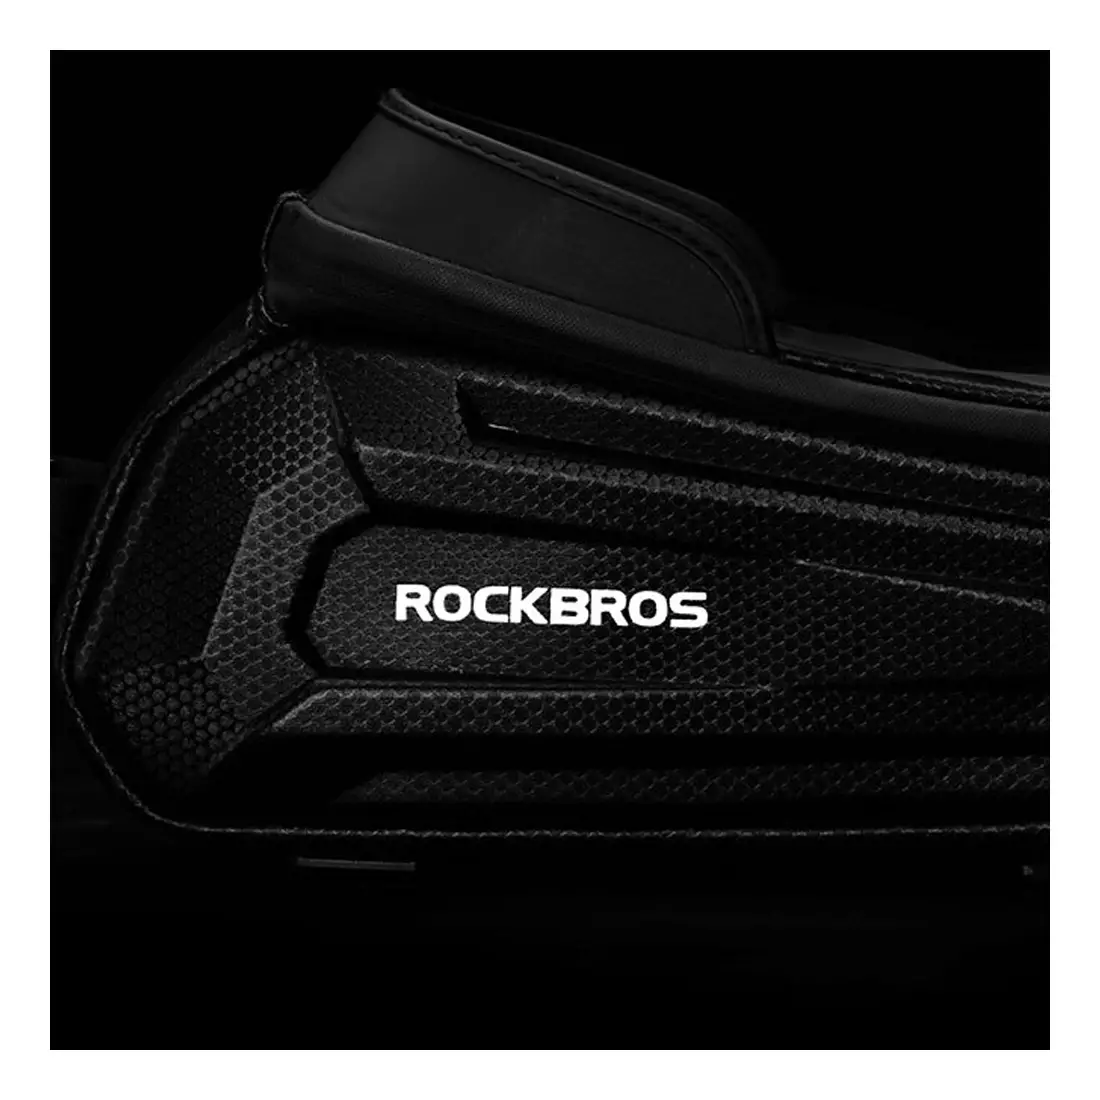 Rockbros Handytasche mit Hartschalenrahmen, schwarz B68